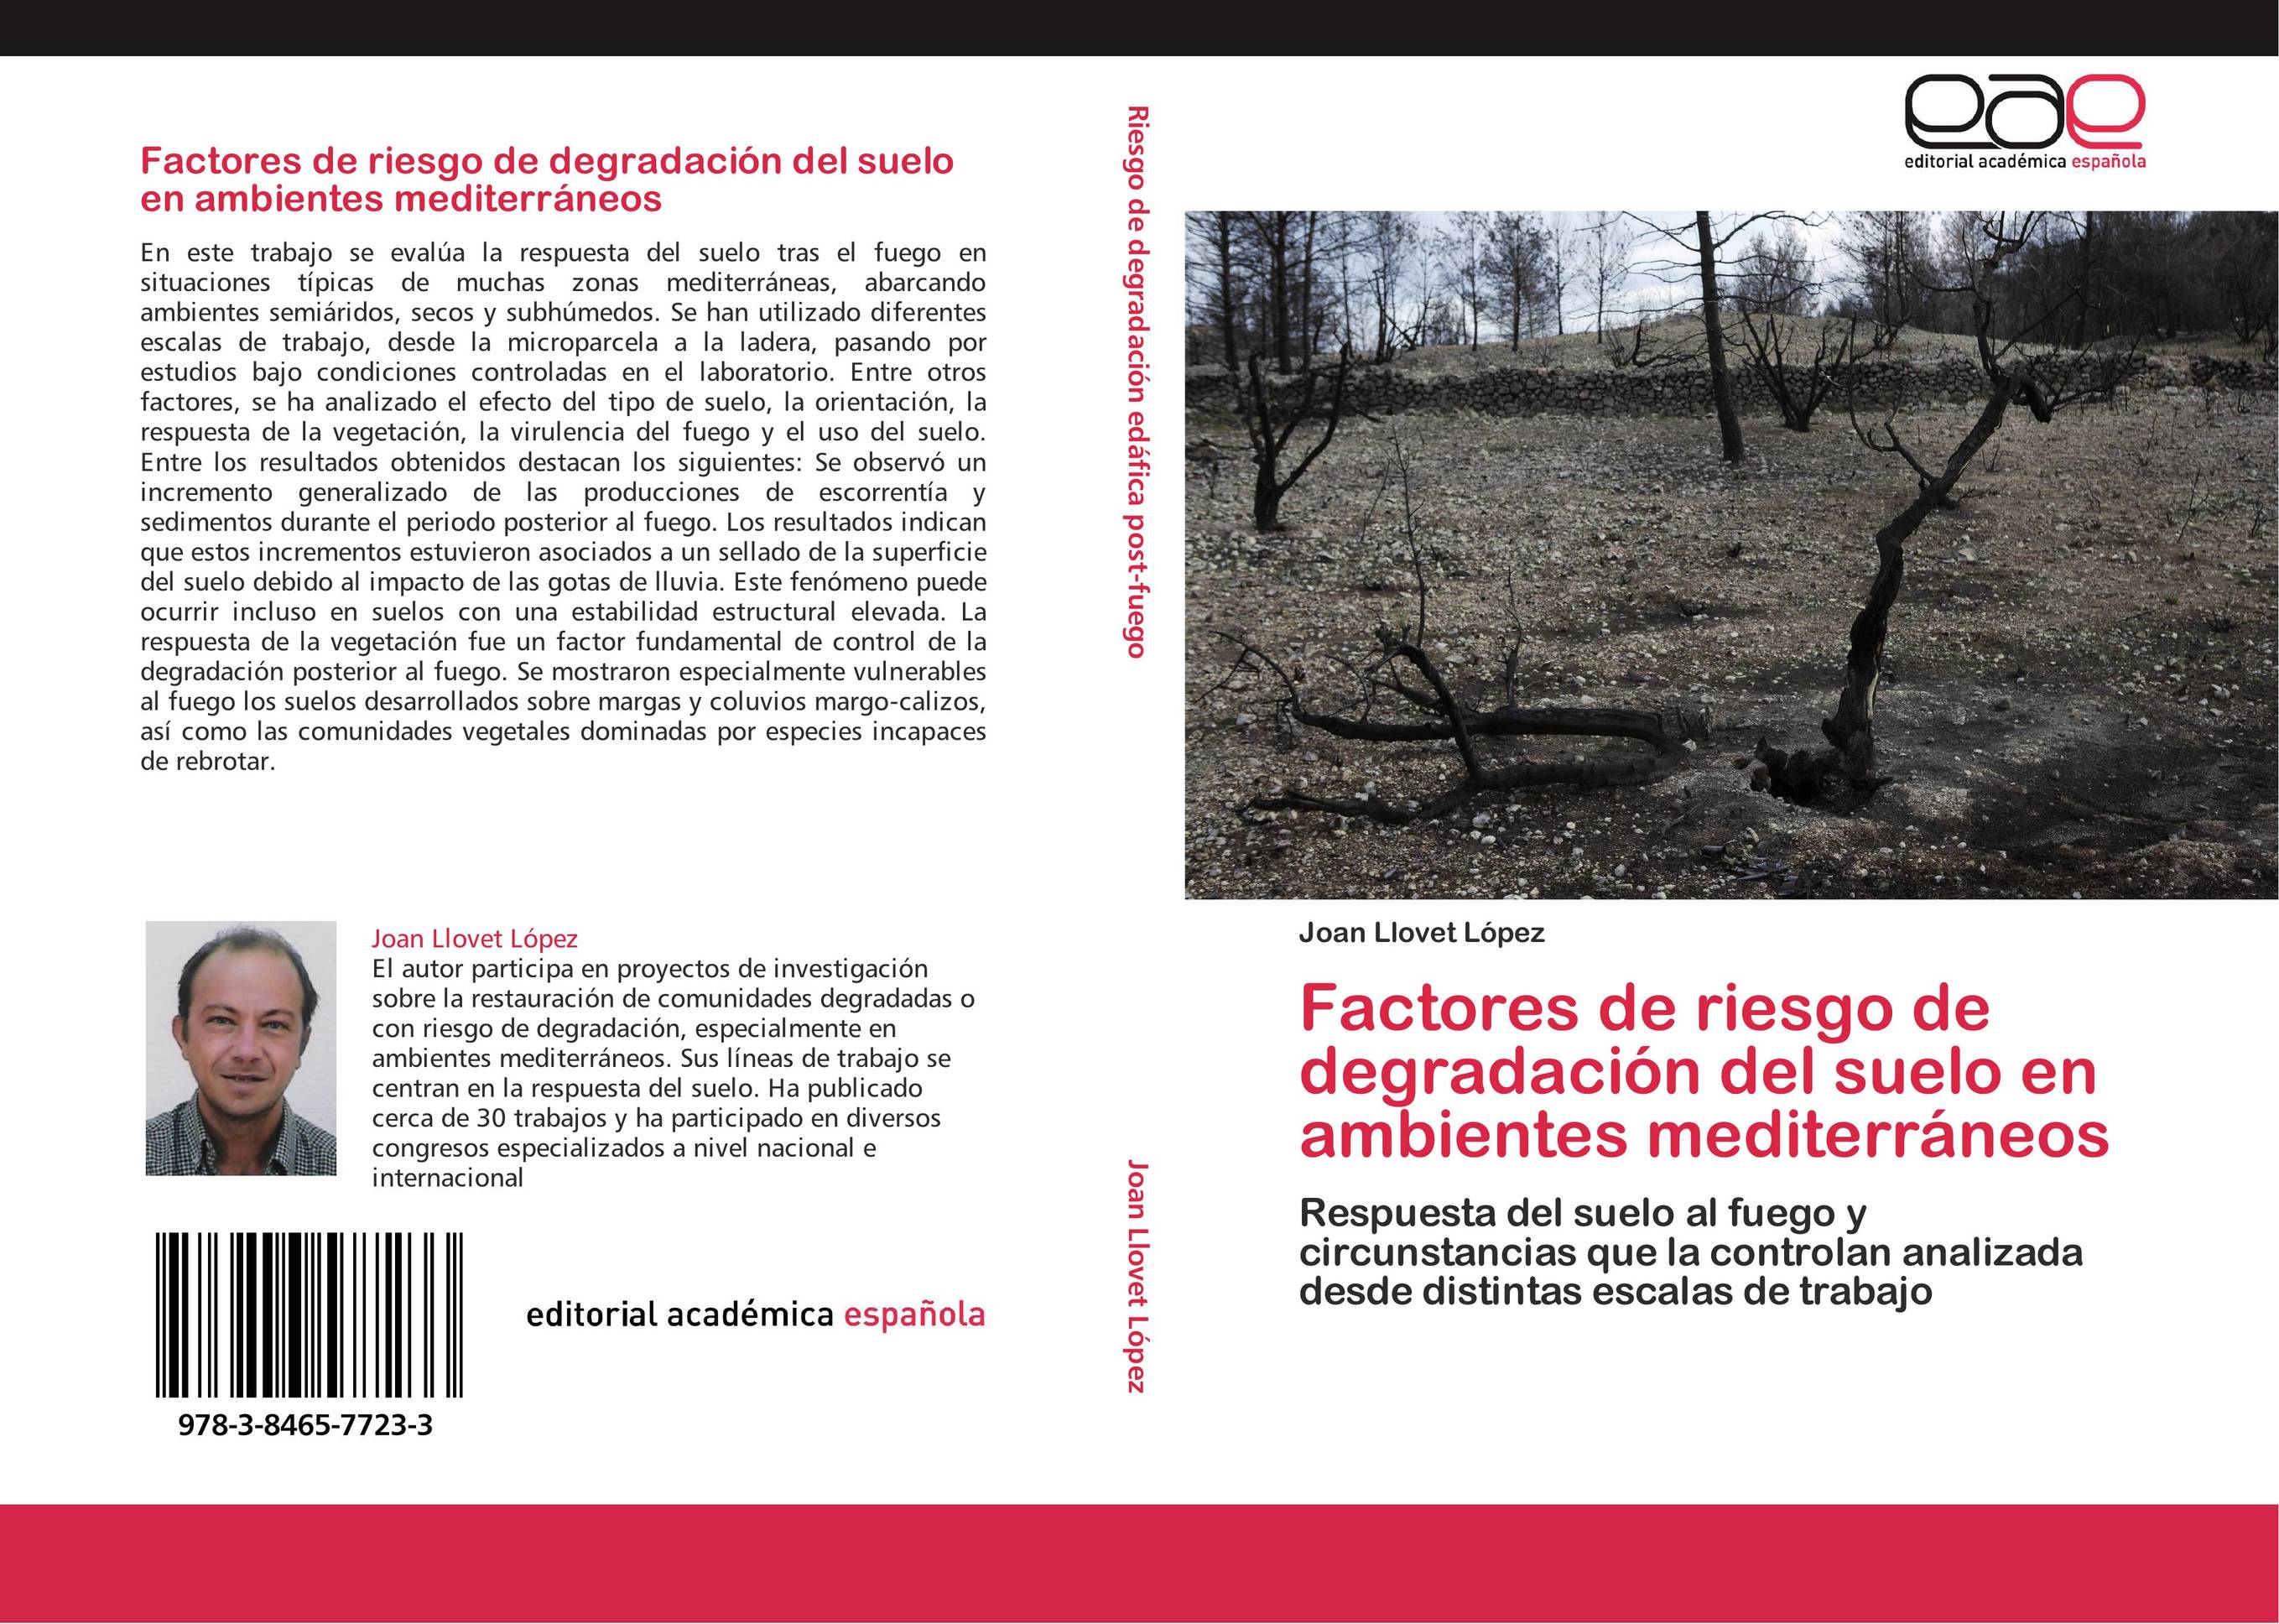 Factores de riesgo de degradación del suelo en ambientes mediterráneos